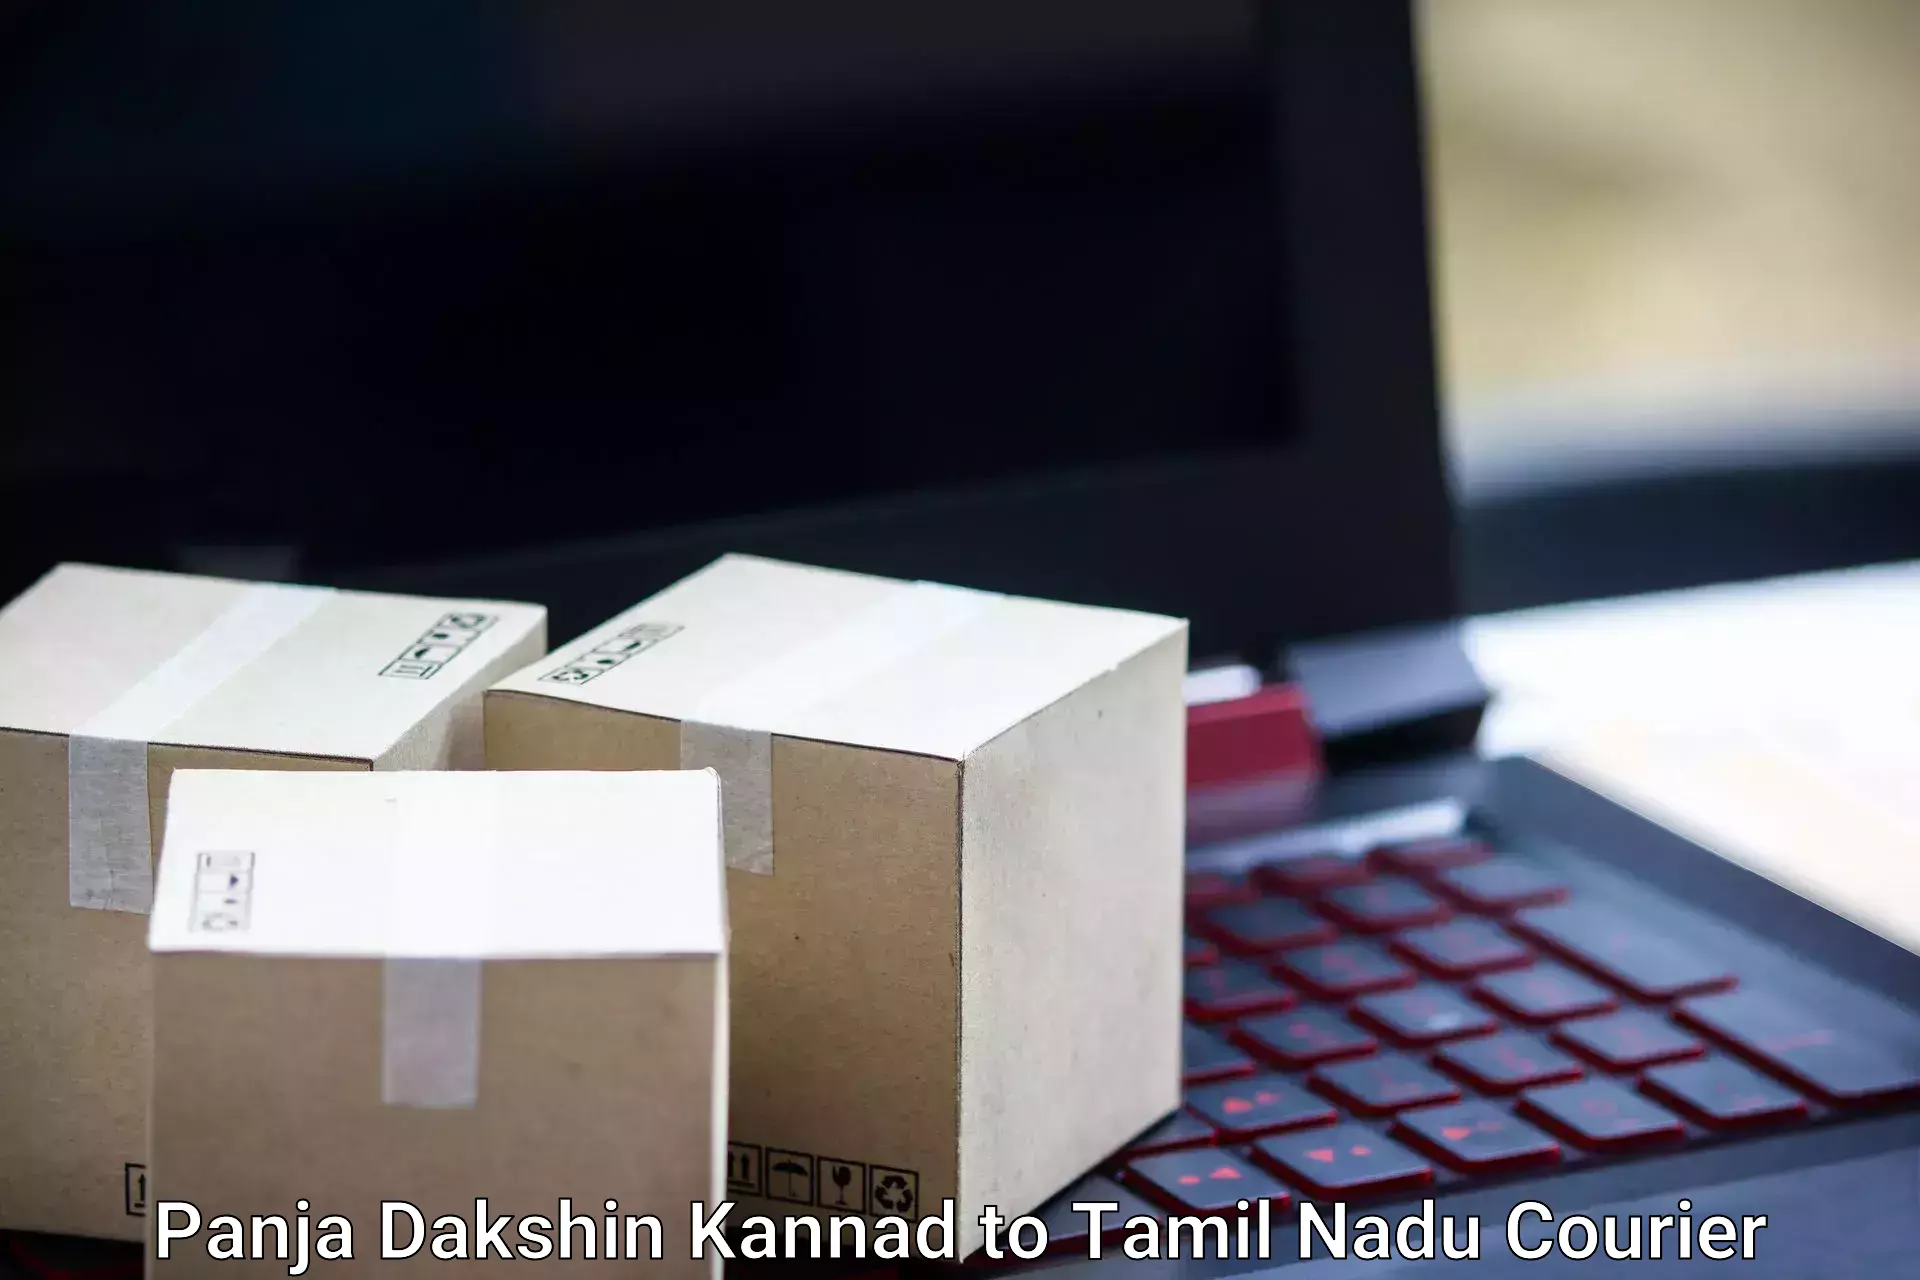 Online luggage shipping booking Panja Dakshin Kannad to Perambalur